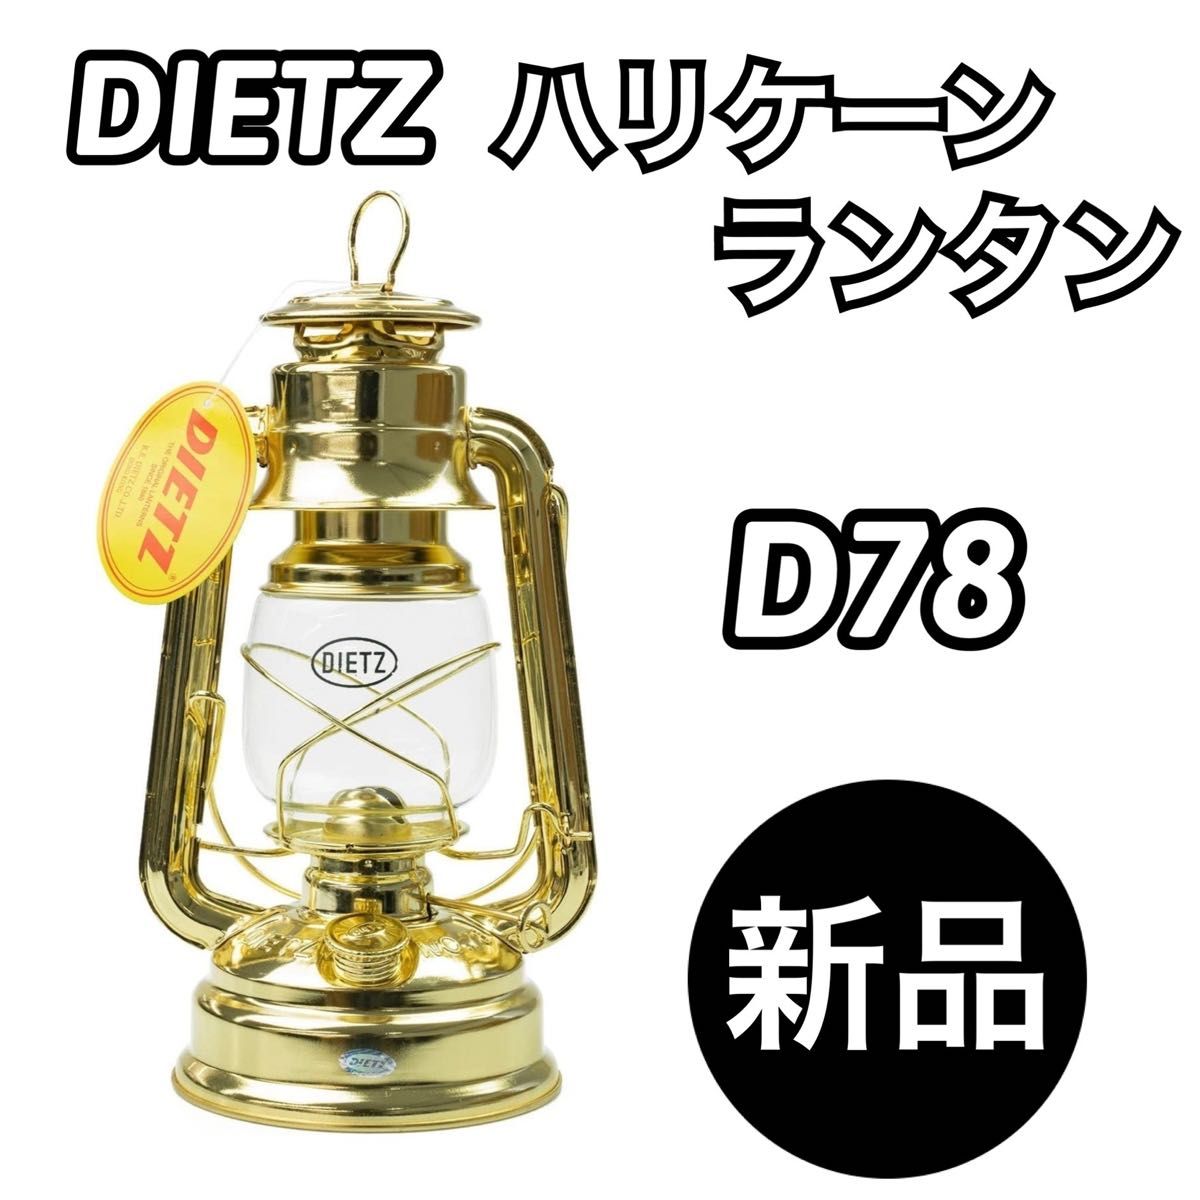 【新品未使用】DIETZ デイツ ハリケーンランタン D78ブラス(真鍮メッキ)